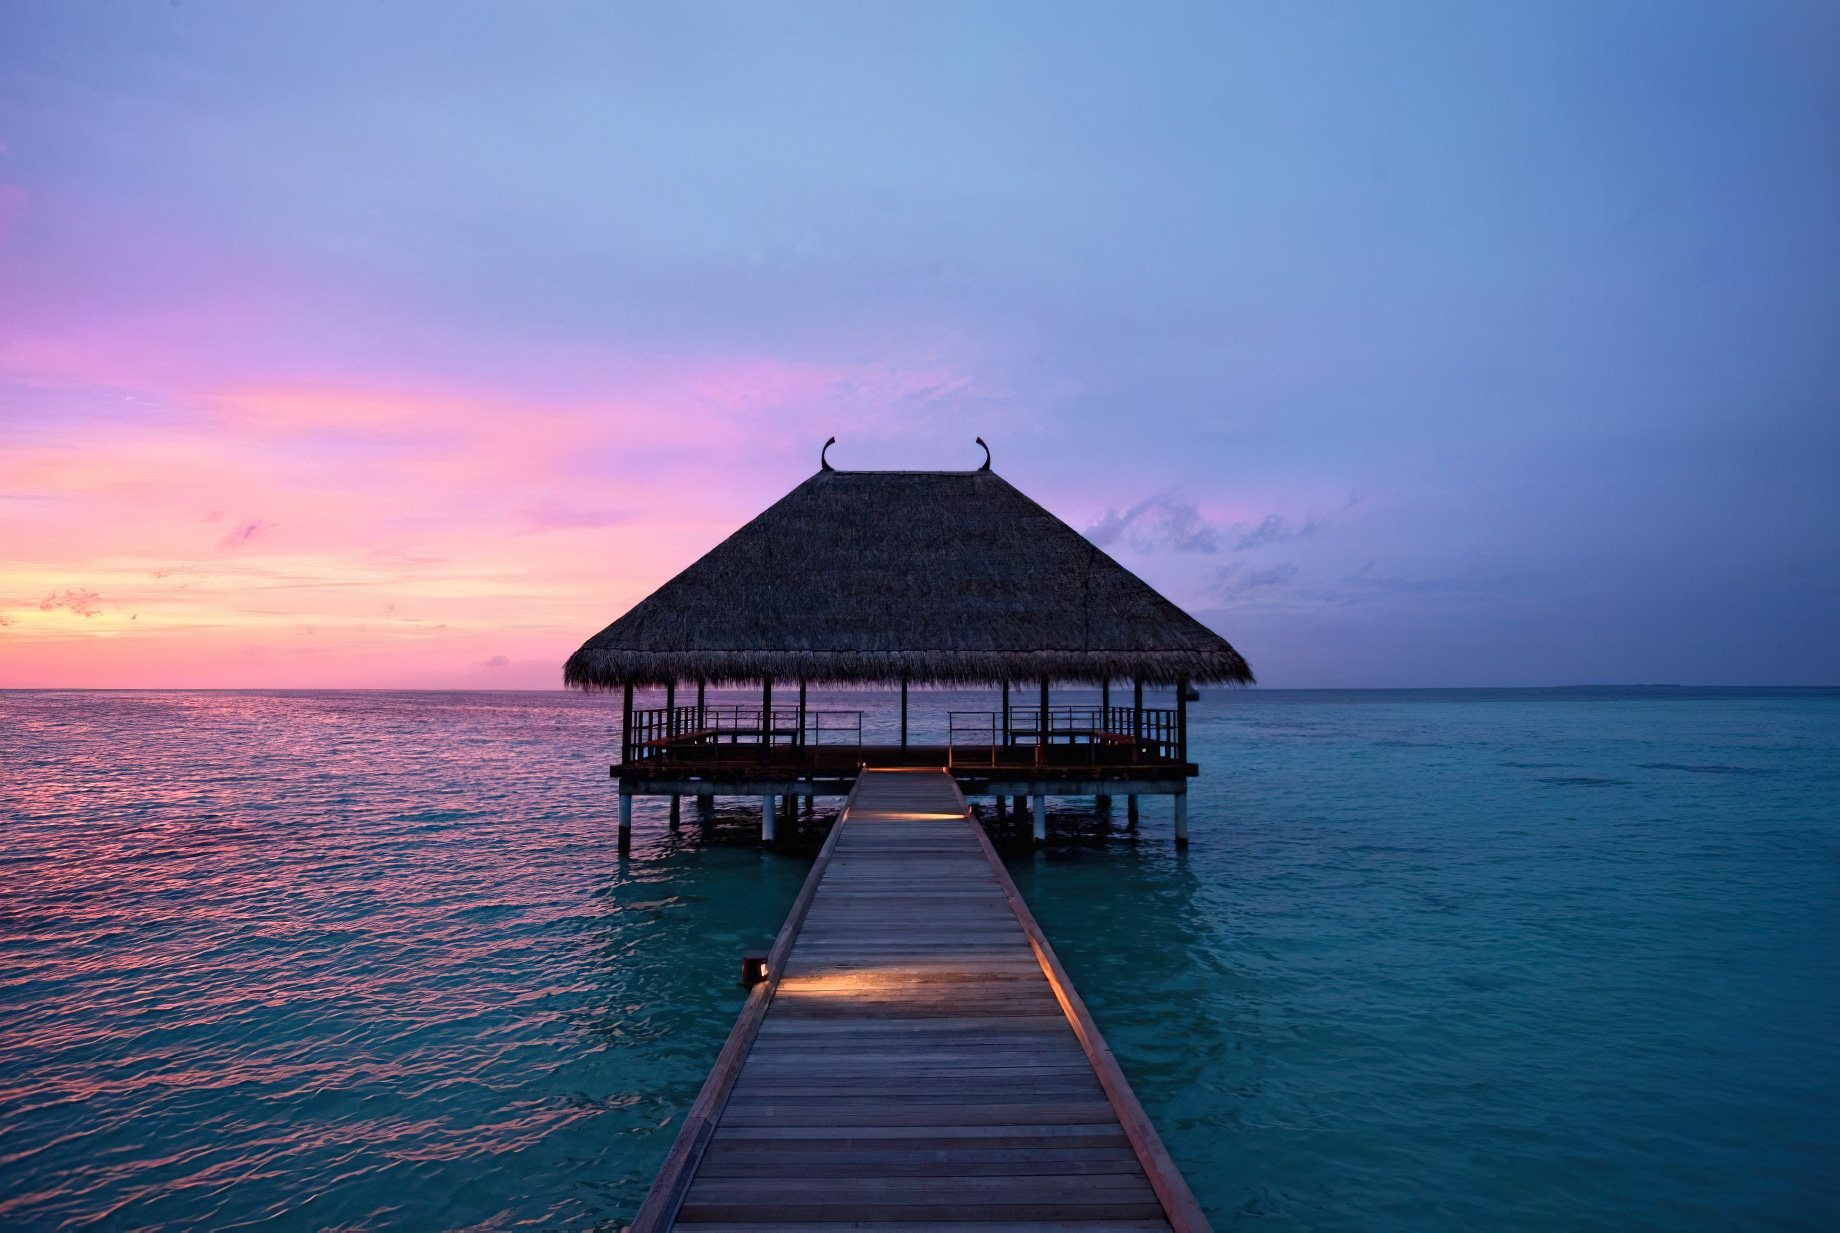 Constance Moofushi Resort - South Ari Atoll, Maldives - Honeymoon Jetty Sunset View